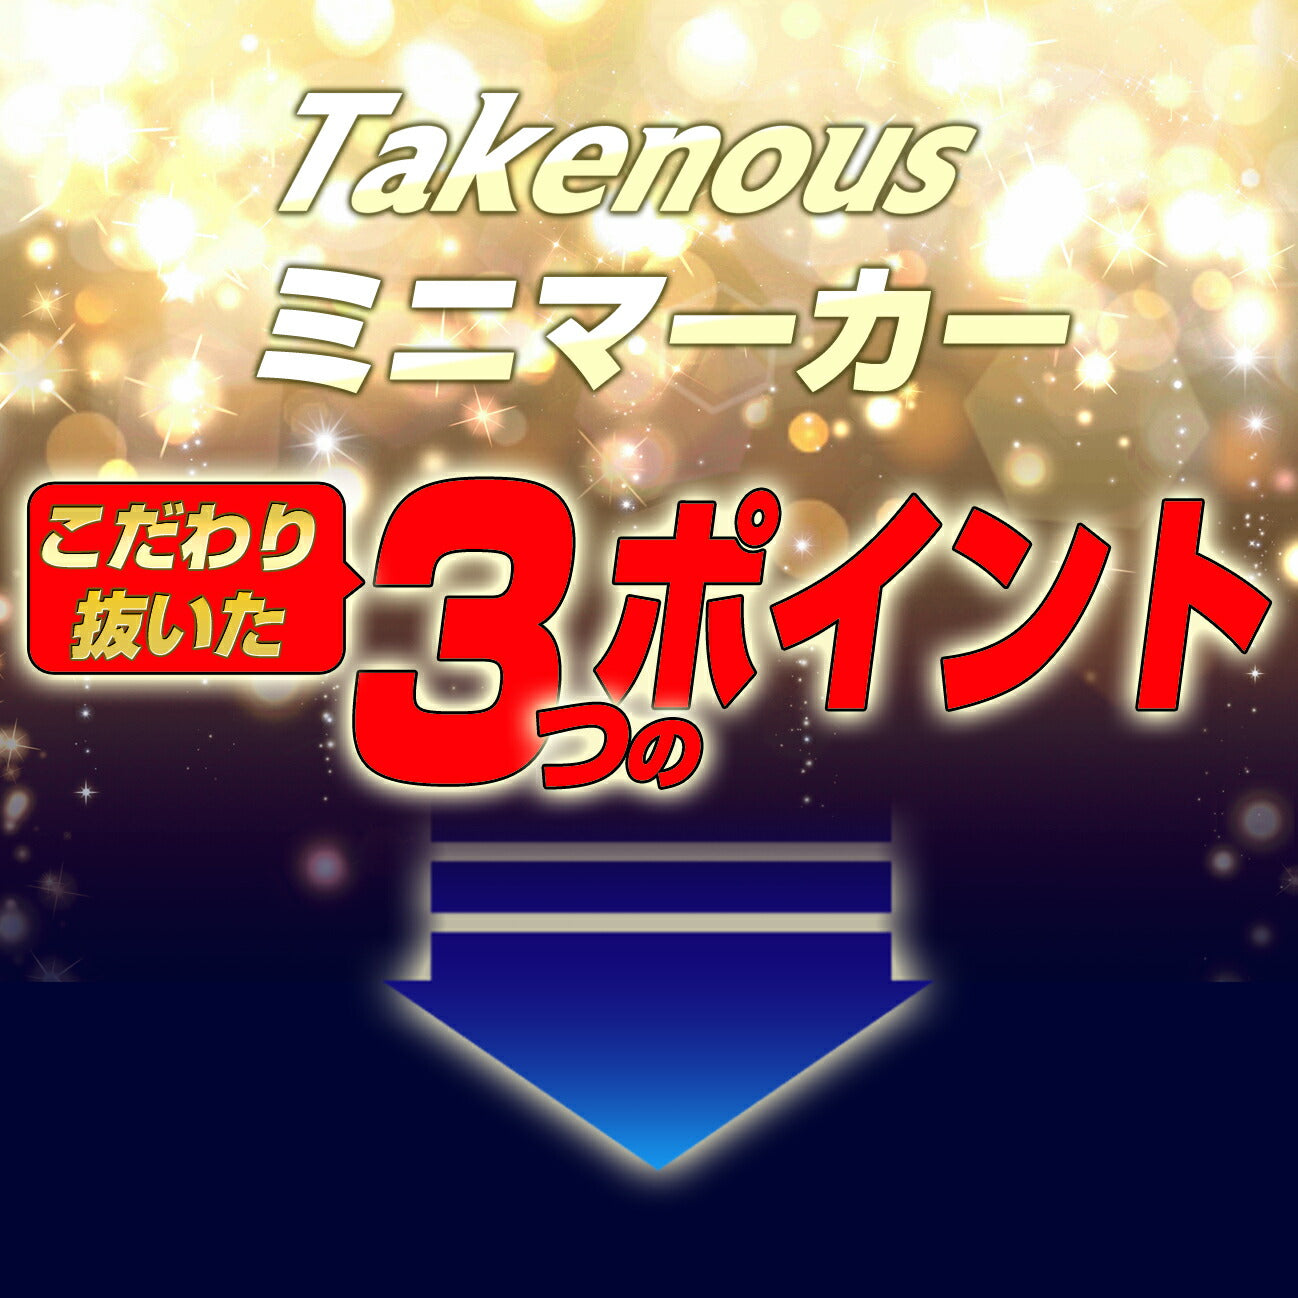 Takenous ミニマーカー(take110)